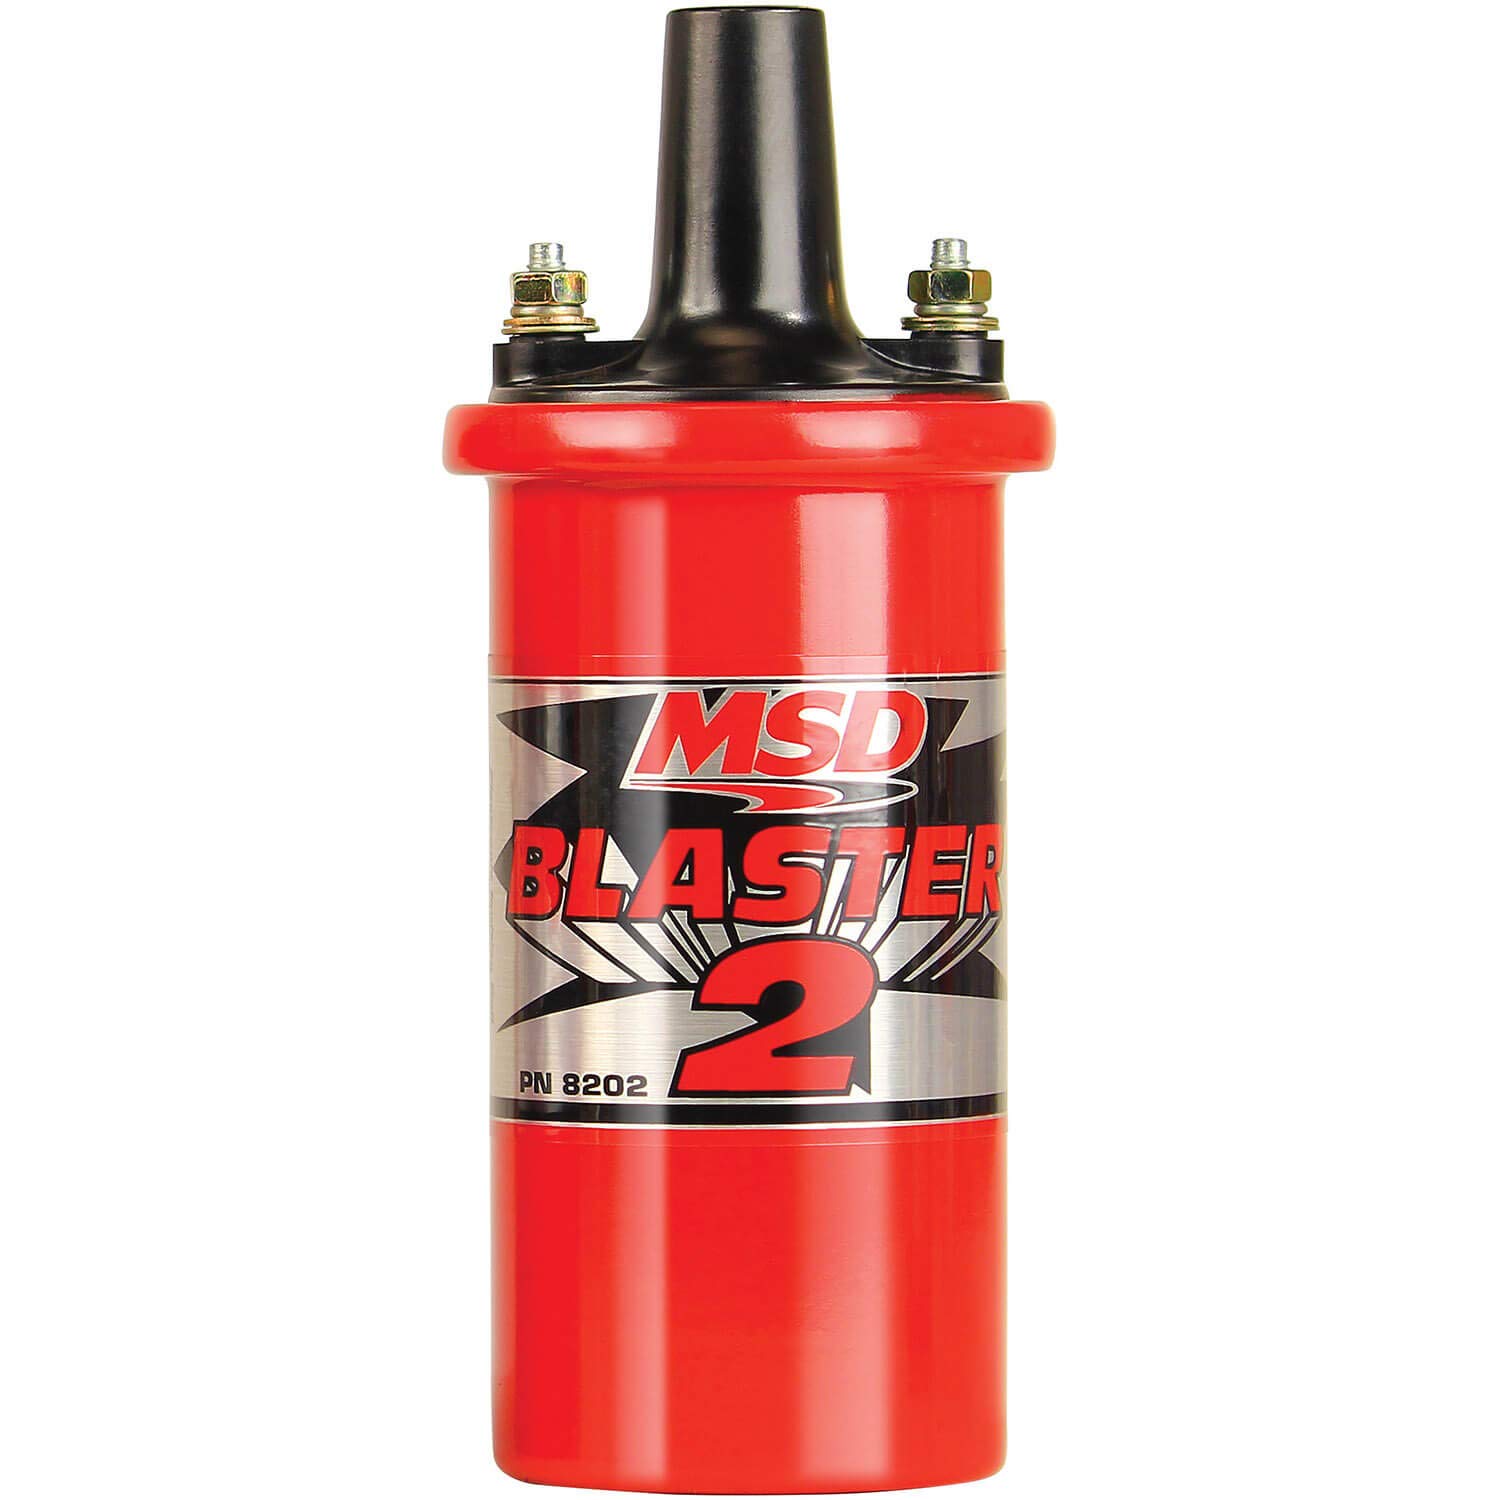 MSD 8202 Blaster 2, Rot Gehause von MSD